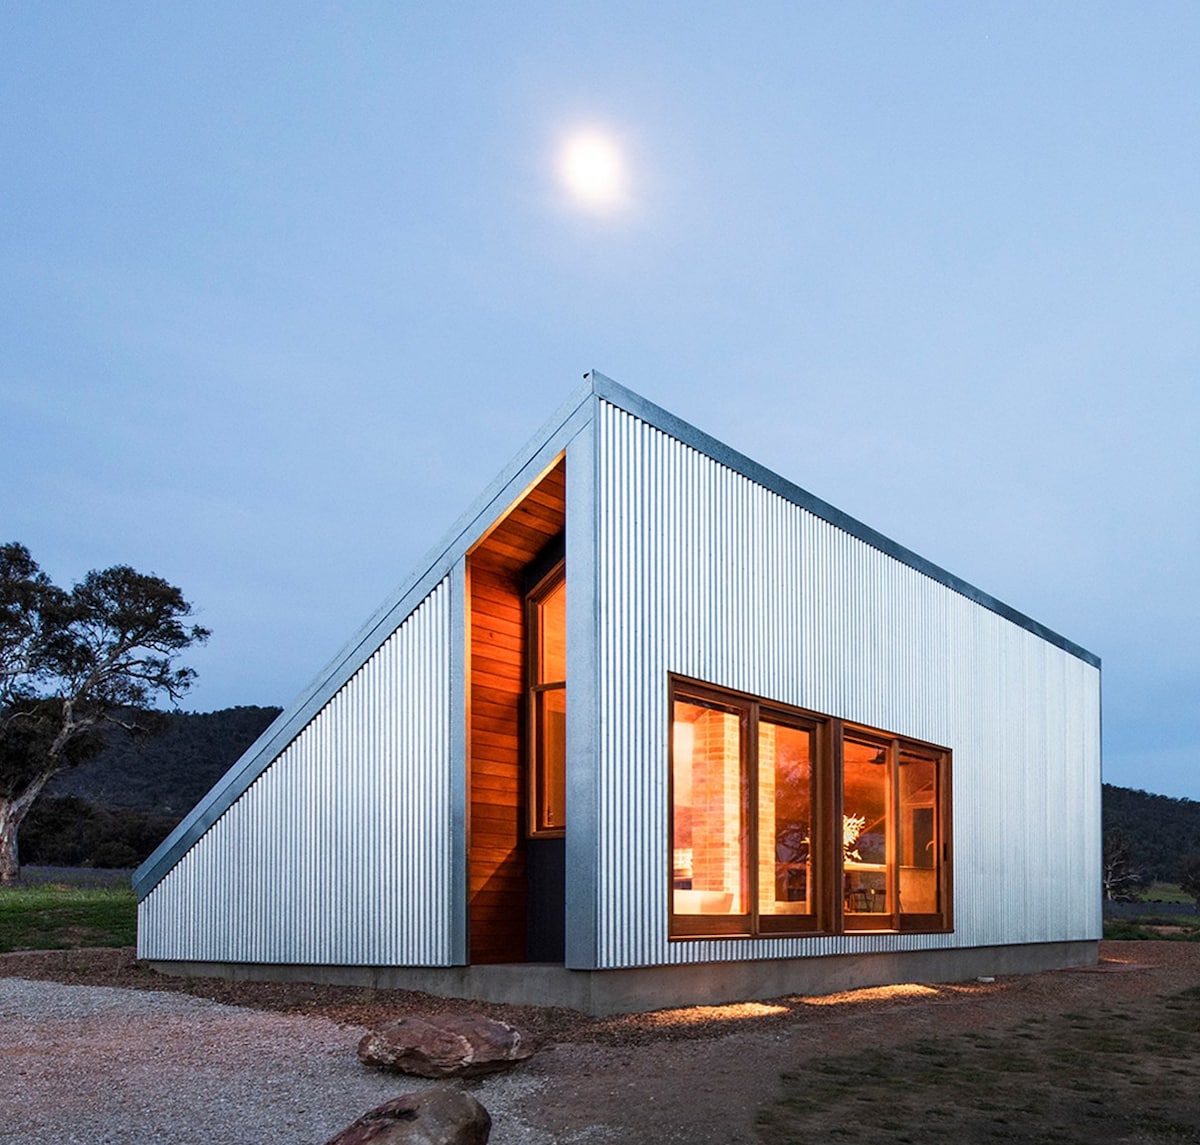 Une maison du studio Cameron Anderson Architects sous la pleine lune. Ses fenêtres et sa grande porte s'ouvrent sur un intérieur chaleureux en bois. Les bordures métalliques de ses murs extérieurs reflètent le clair de lune.